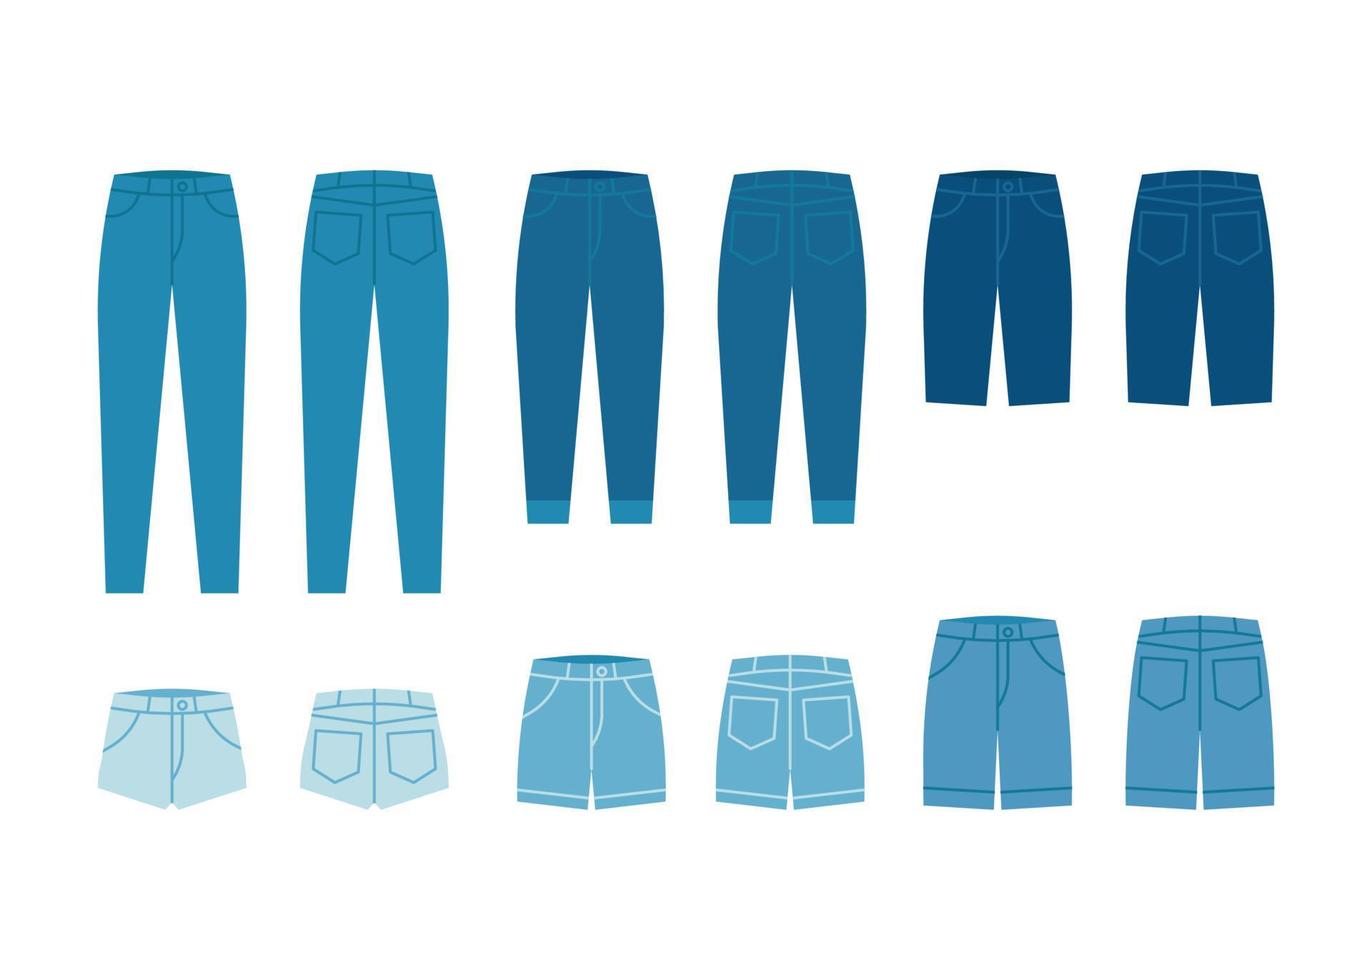 Jeanshosen und Shorts, blaue Jeanshosen mit Taschen. Stoffhosenmodell mit Vorder- und Rückansicht. flache Vektorgrafik vektor